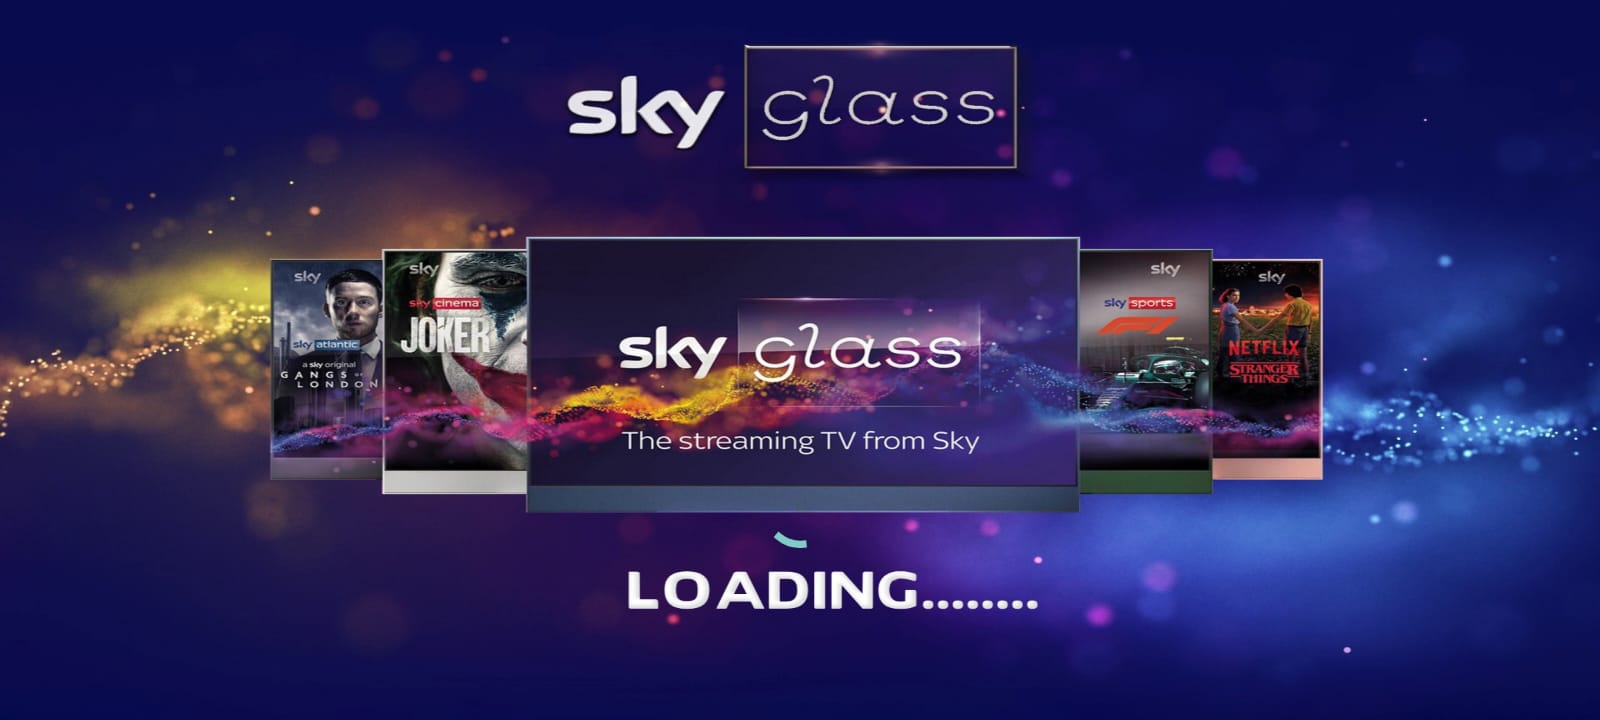 Sky Glass IPTV Service